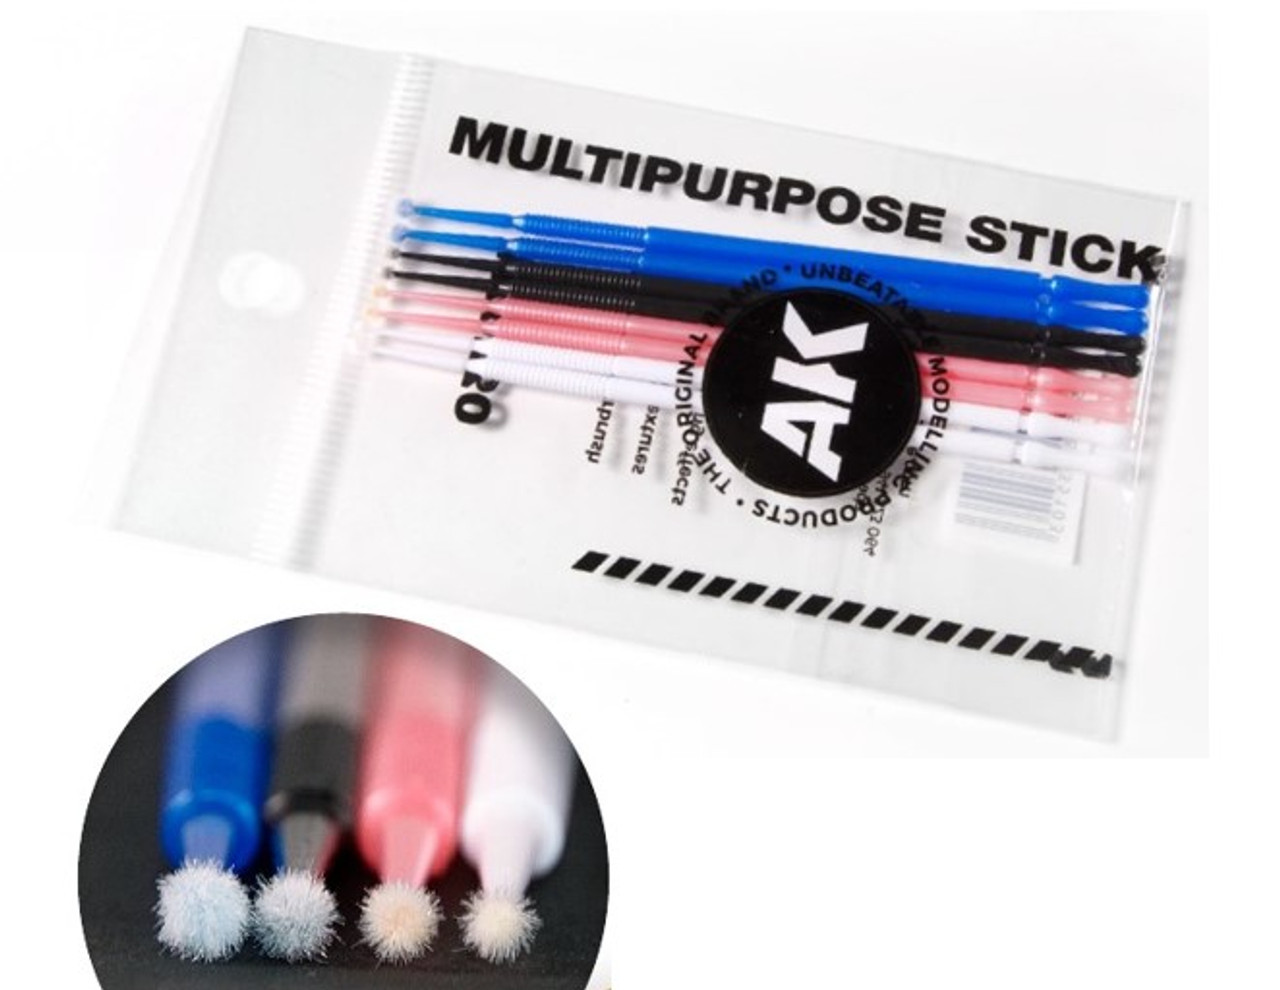 Multipurpose sticks (8units)